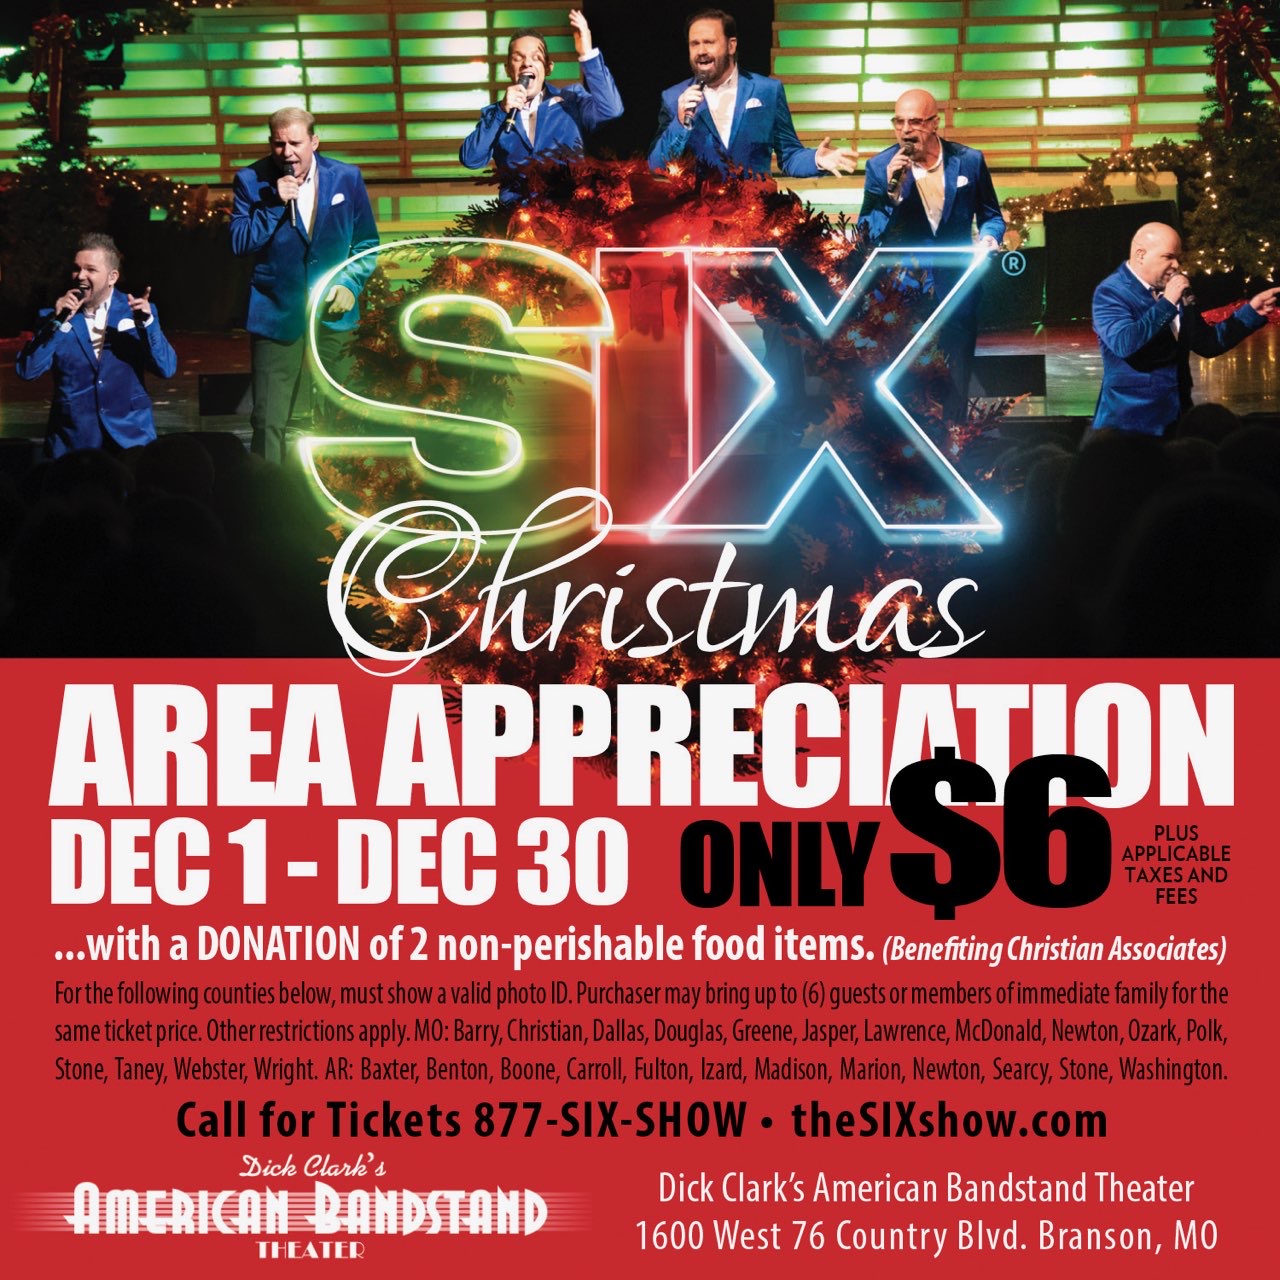 flyer for SIX Area Appreciation Dec 1 - Dec 30 2022 only six dollars